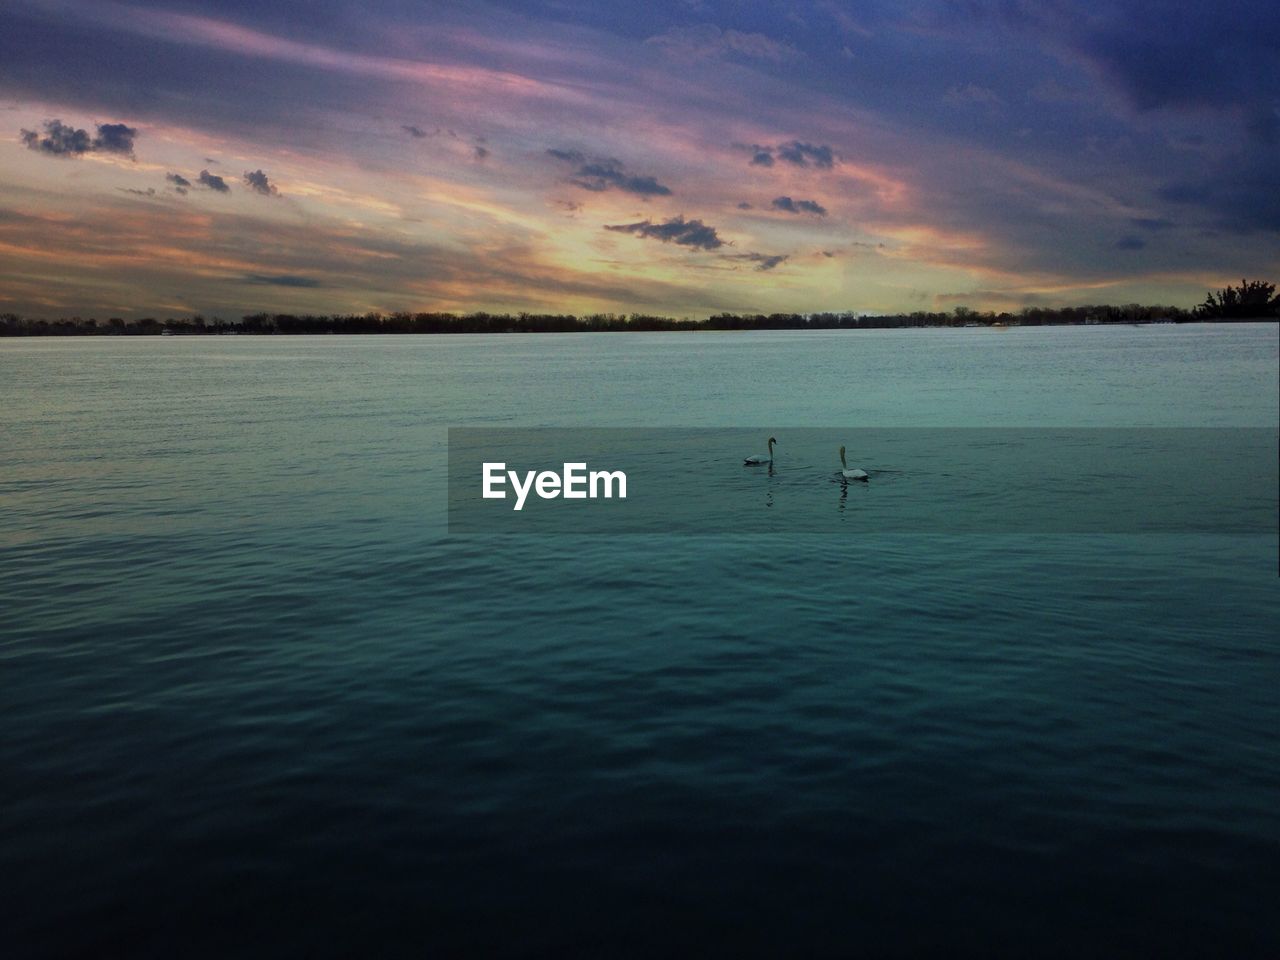 Swans swimming on lake ontario during sunset